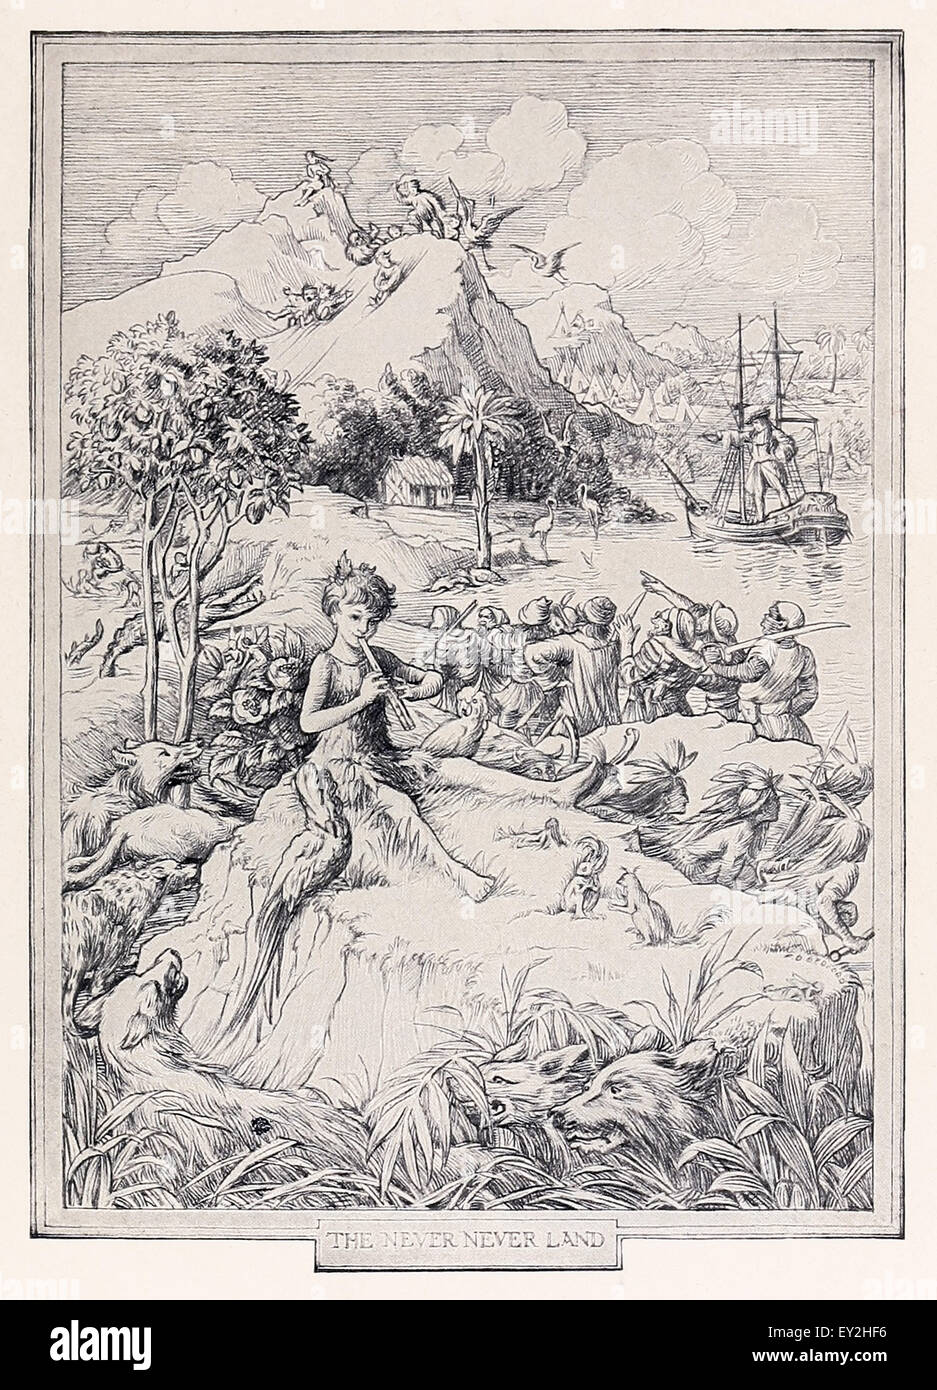 'L'Mai terra' da 'Peter & Wendy' J.M. Barrie (1860-1937), illustrazione di F.D. Bedford (1864-1954). Vedere la descrizione per maggiori informazioni. Foto Stock